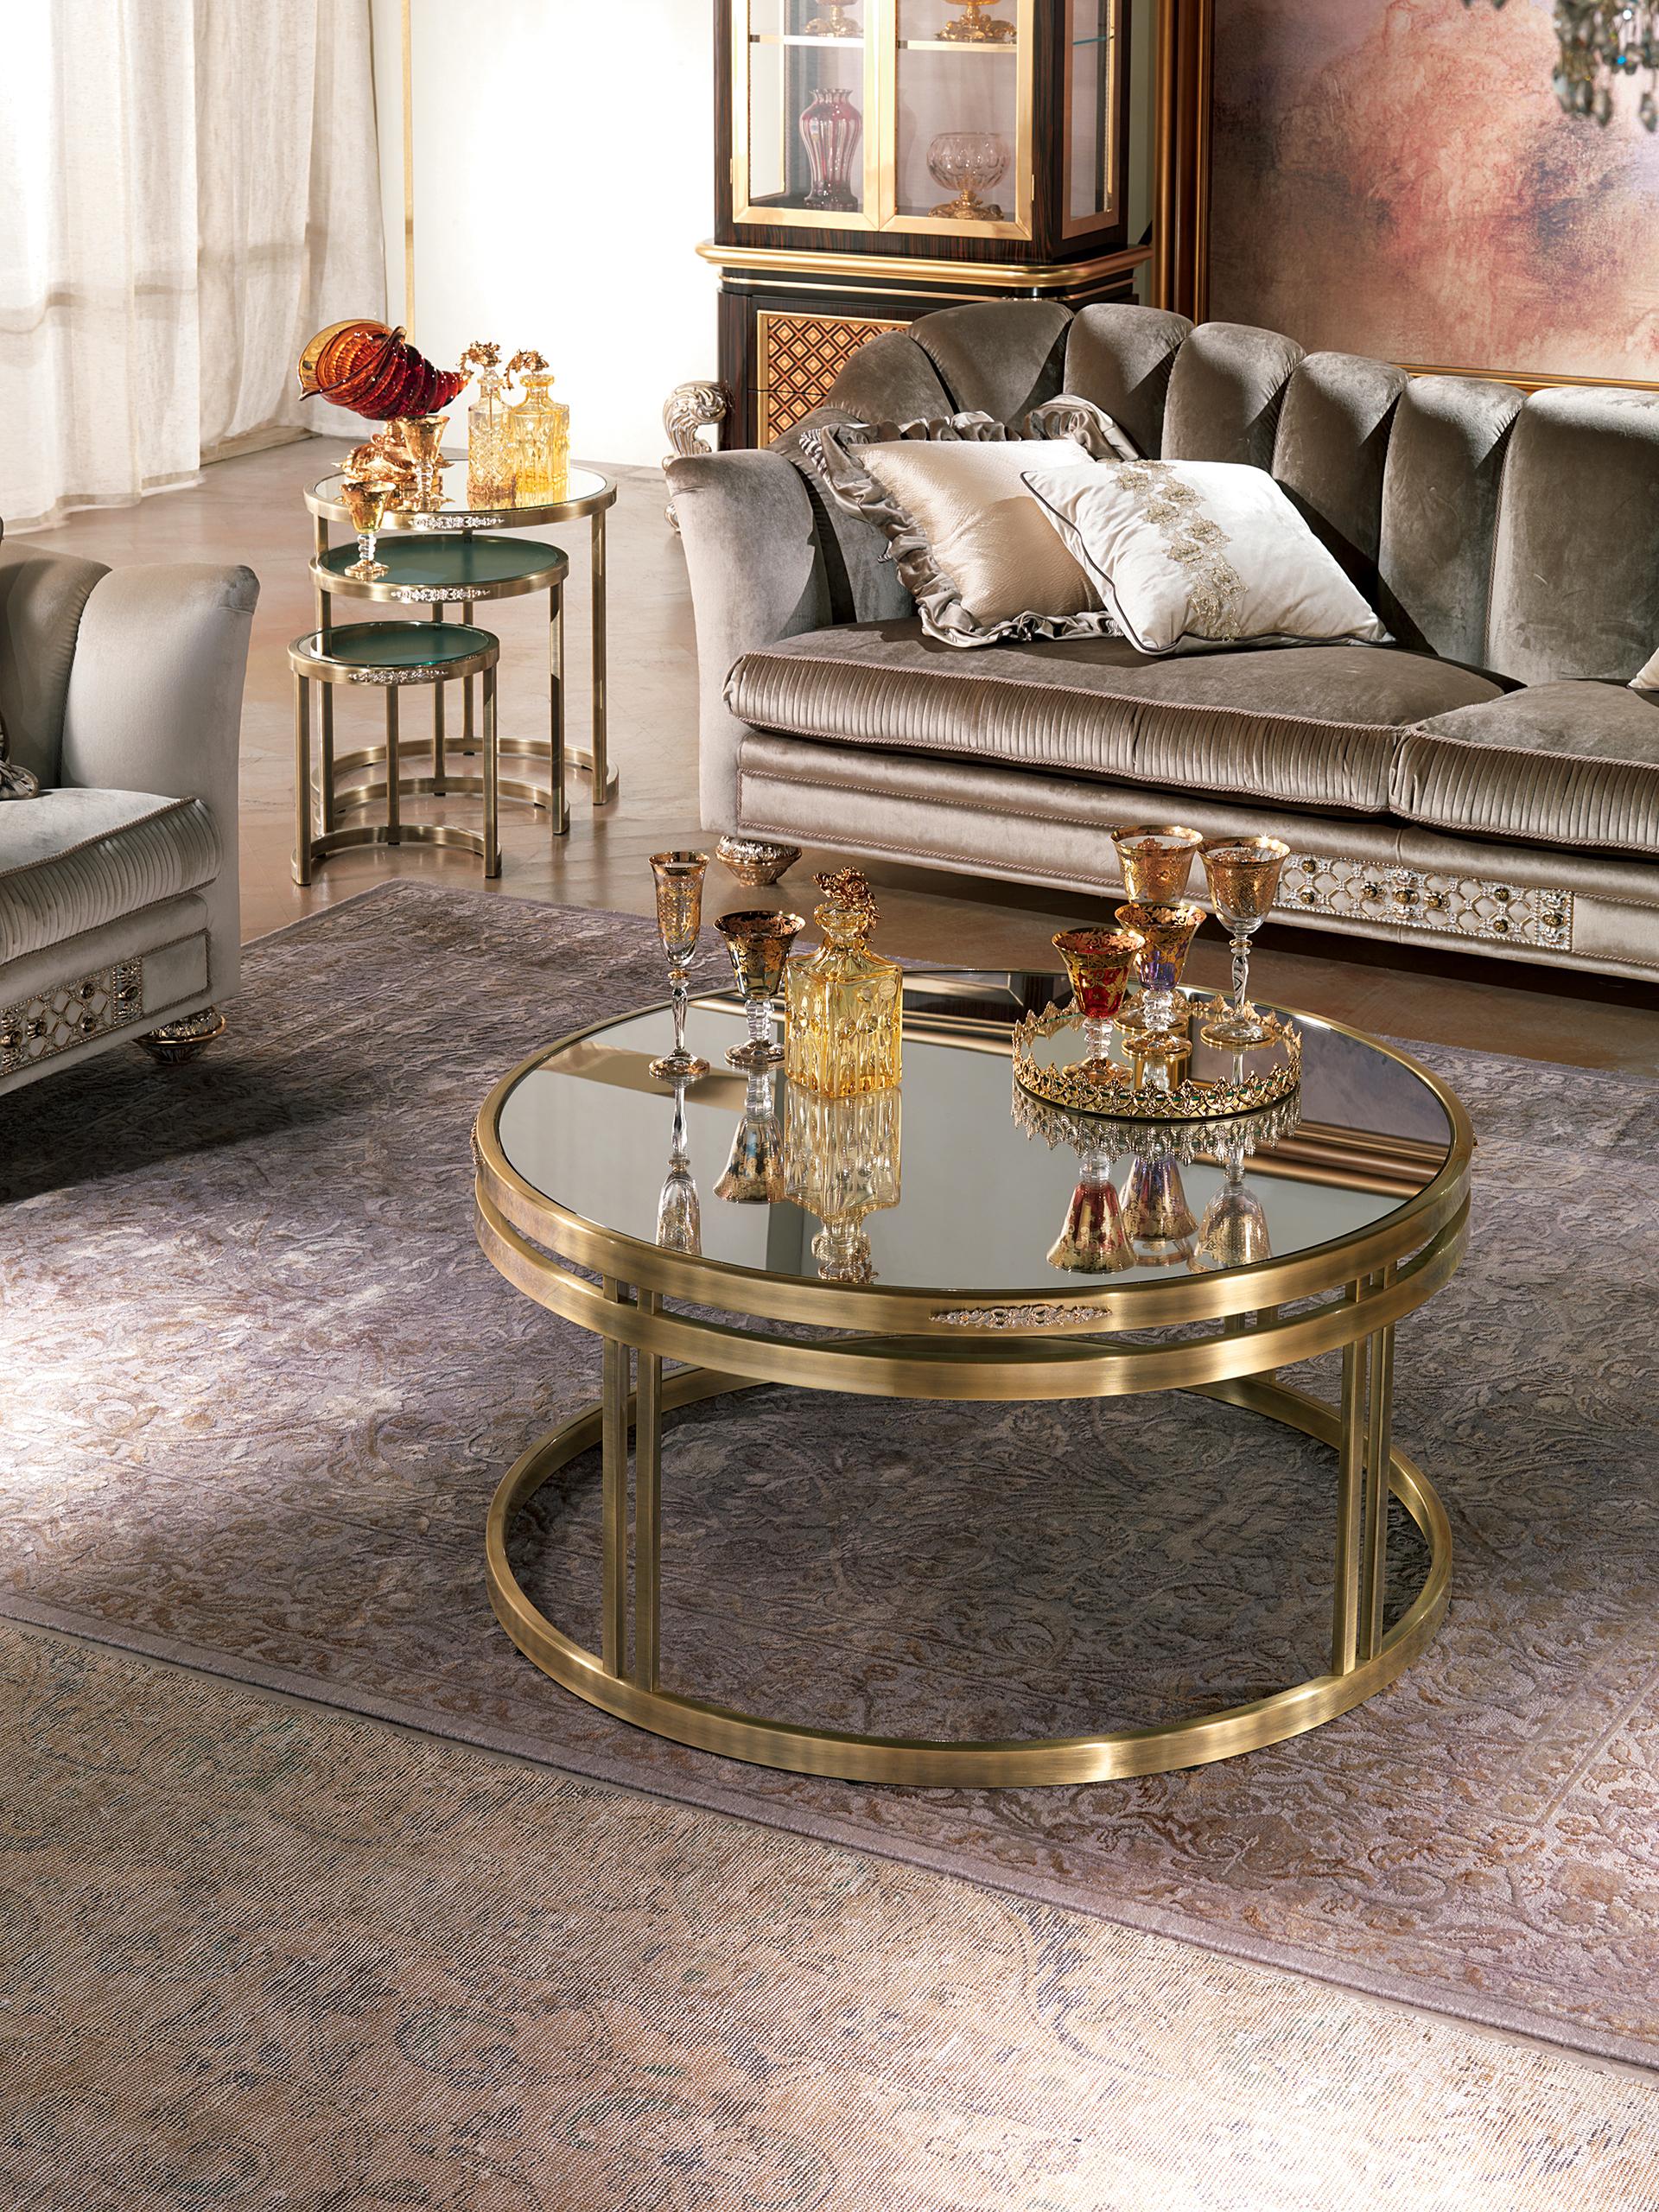 Das Couchtisch-Set AY075 ist ein raffiniertes und funktionelles Möbelstück, das jedem Raum Eleganz und Stil verleiht.

Material und Struktur: Diese Couchtische sind aus Messing gefertigt, einem Material mit goldenem Glanz, das Ihrem Zuhause einen